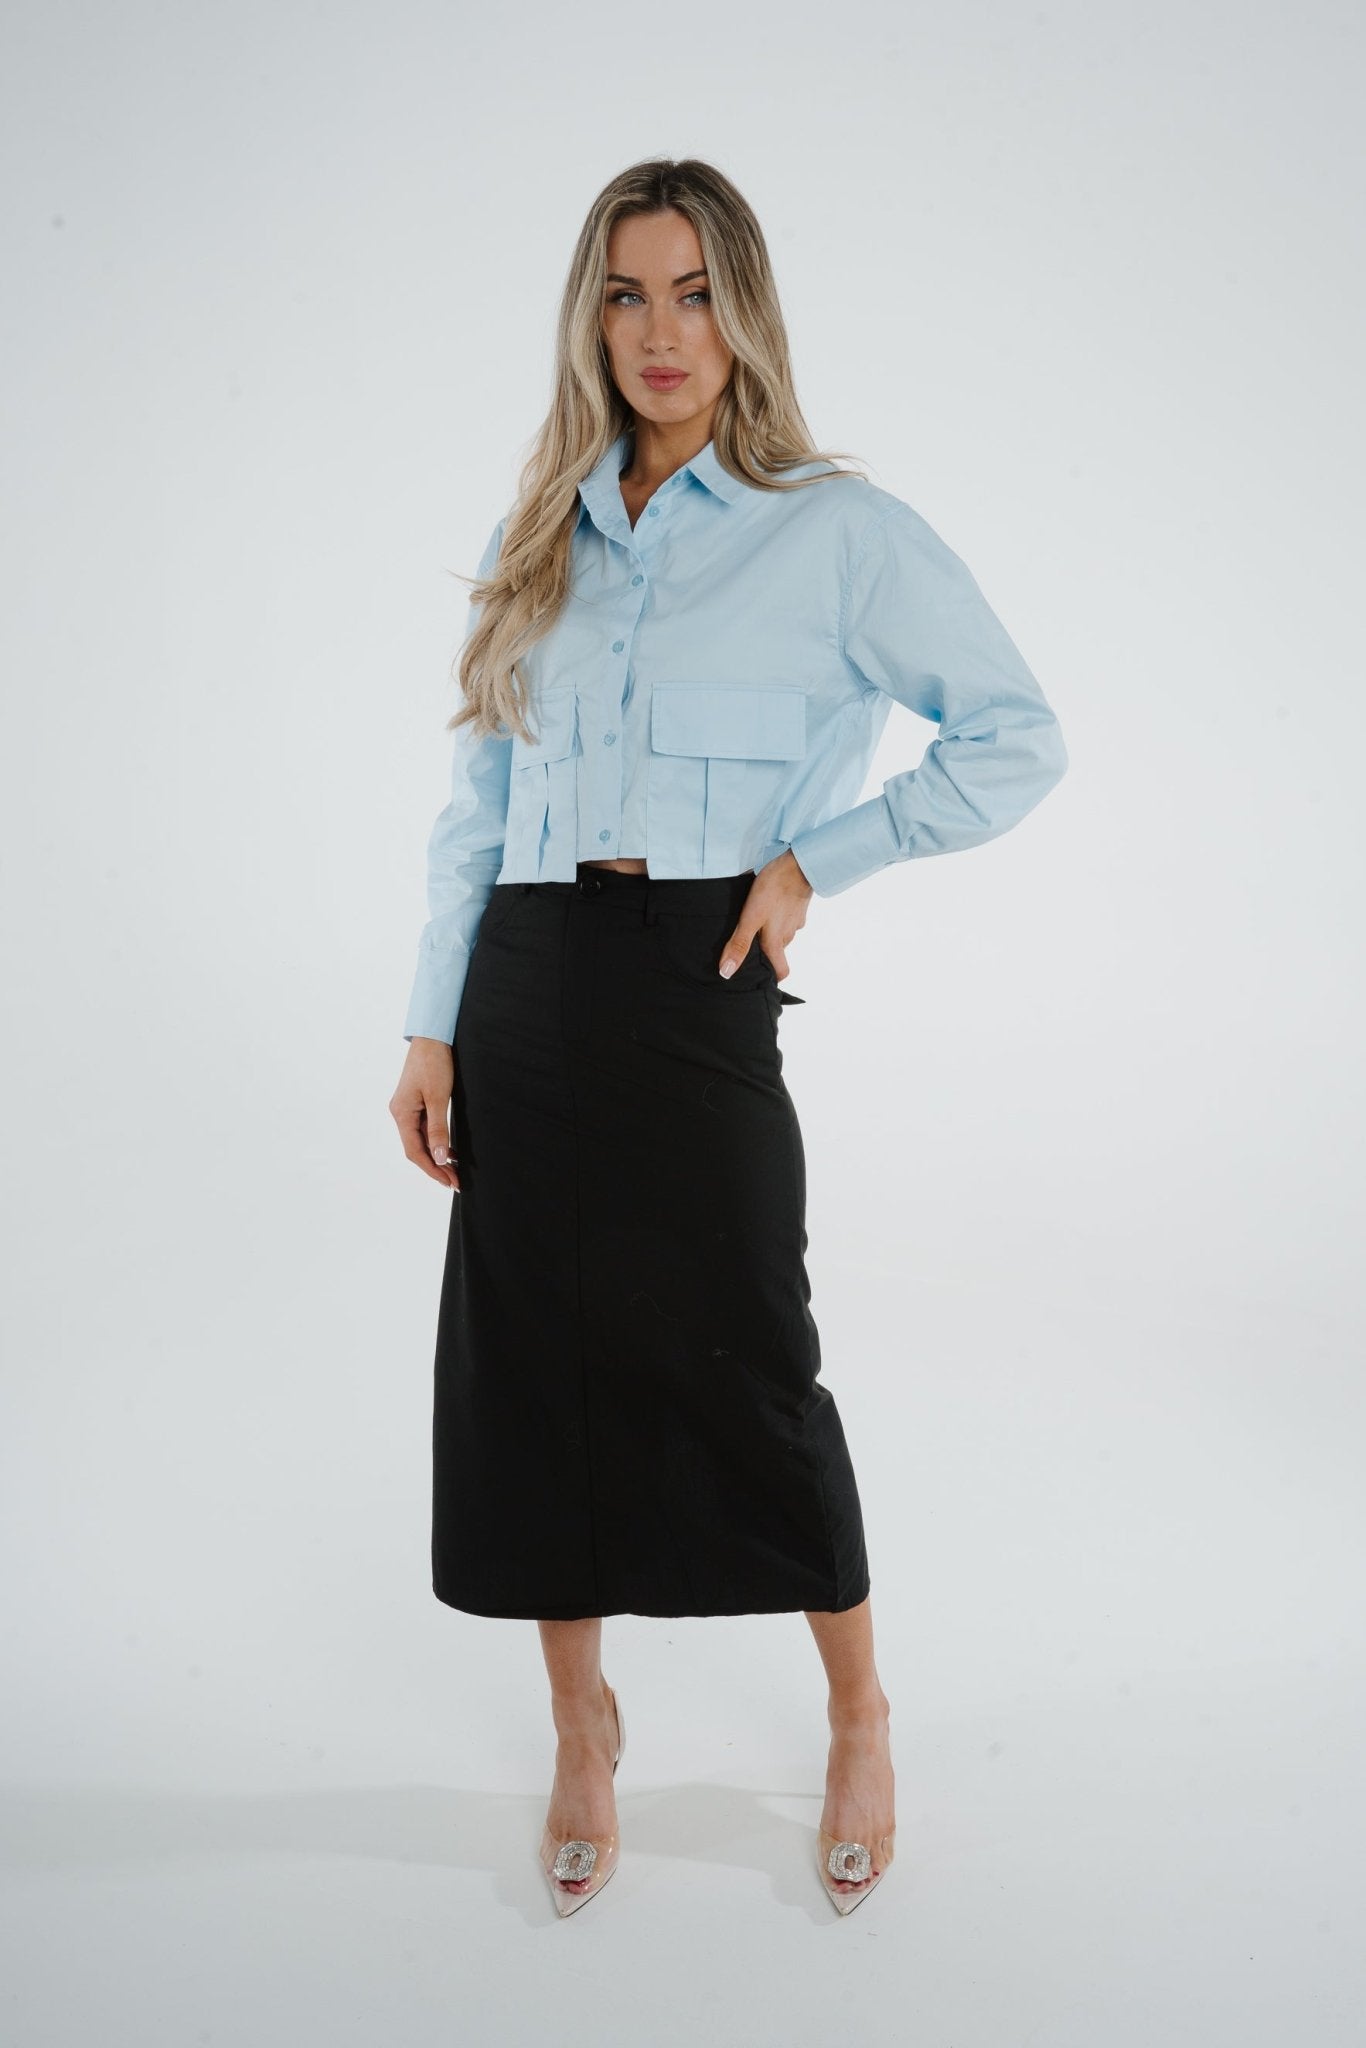 Elsa Midi Skirt In Black - The Walk in Wardrobe